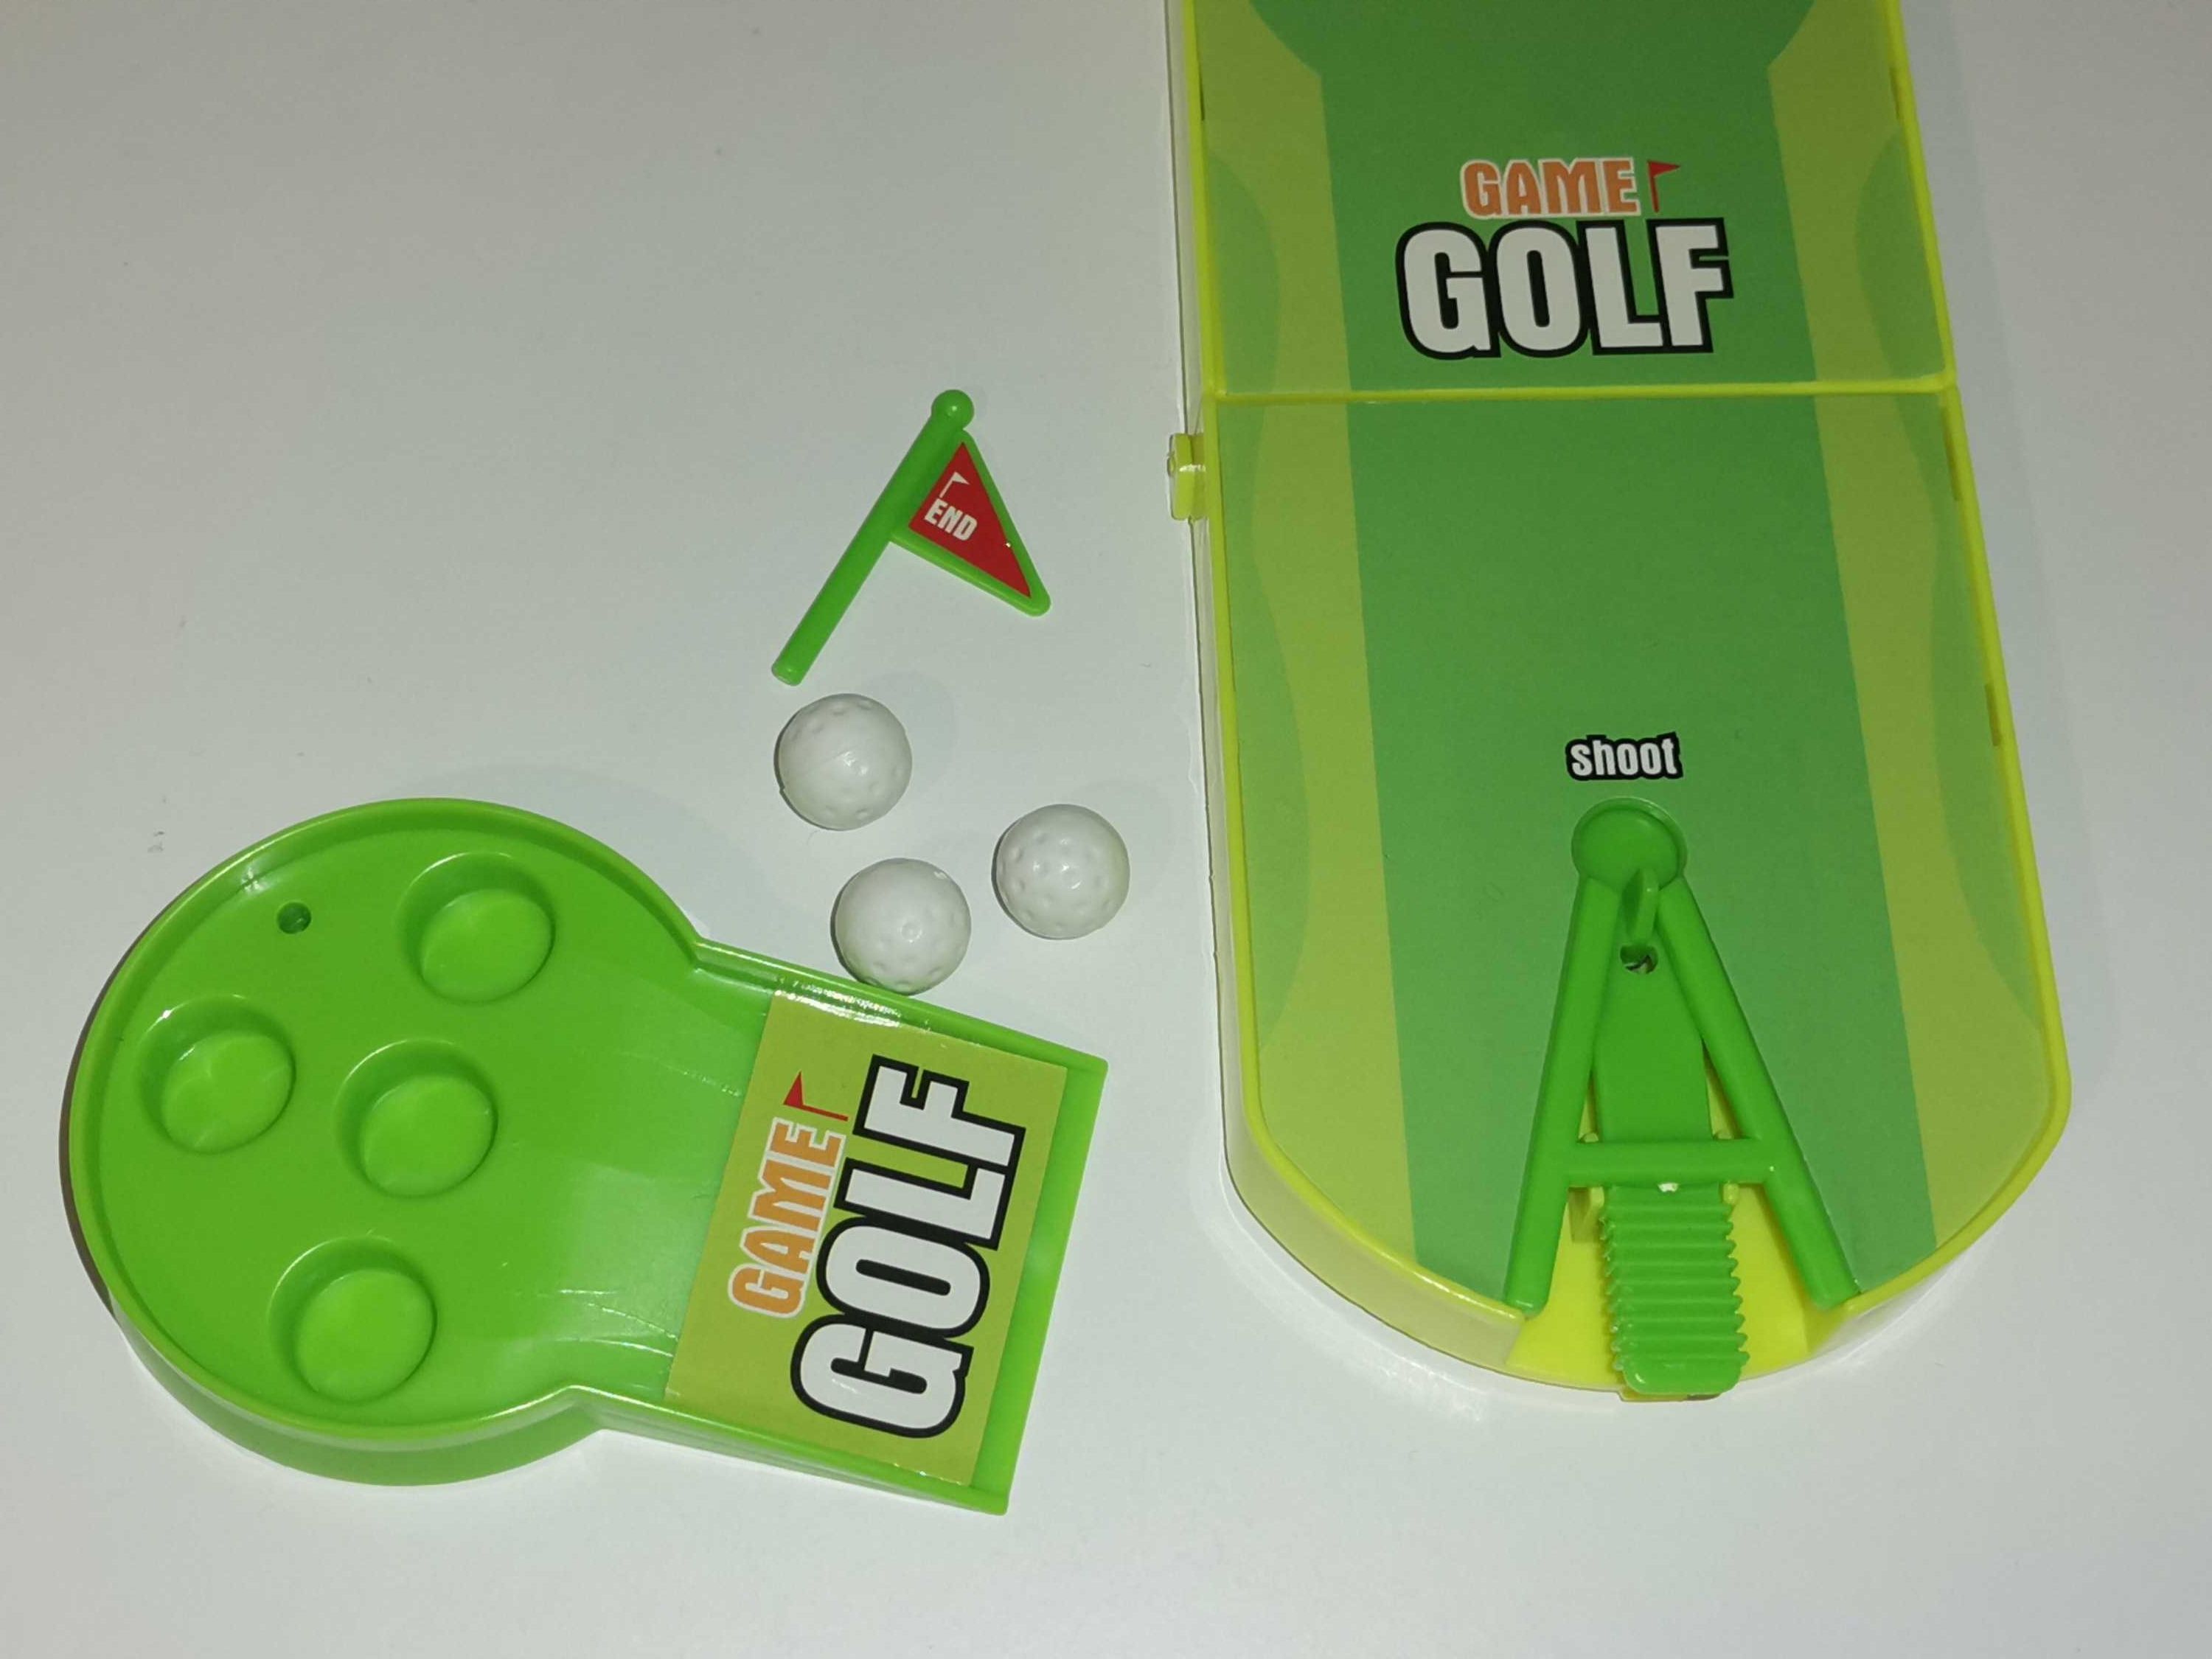 Mini gry x 2 - golf i kosmos - zręcznościowe, fliper - komplet, podróż